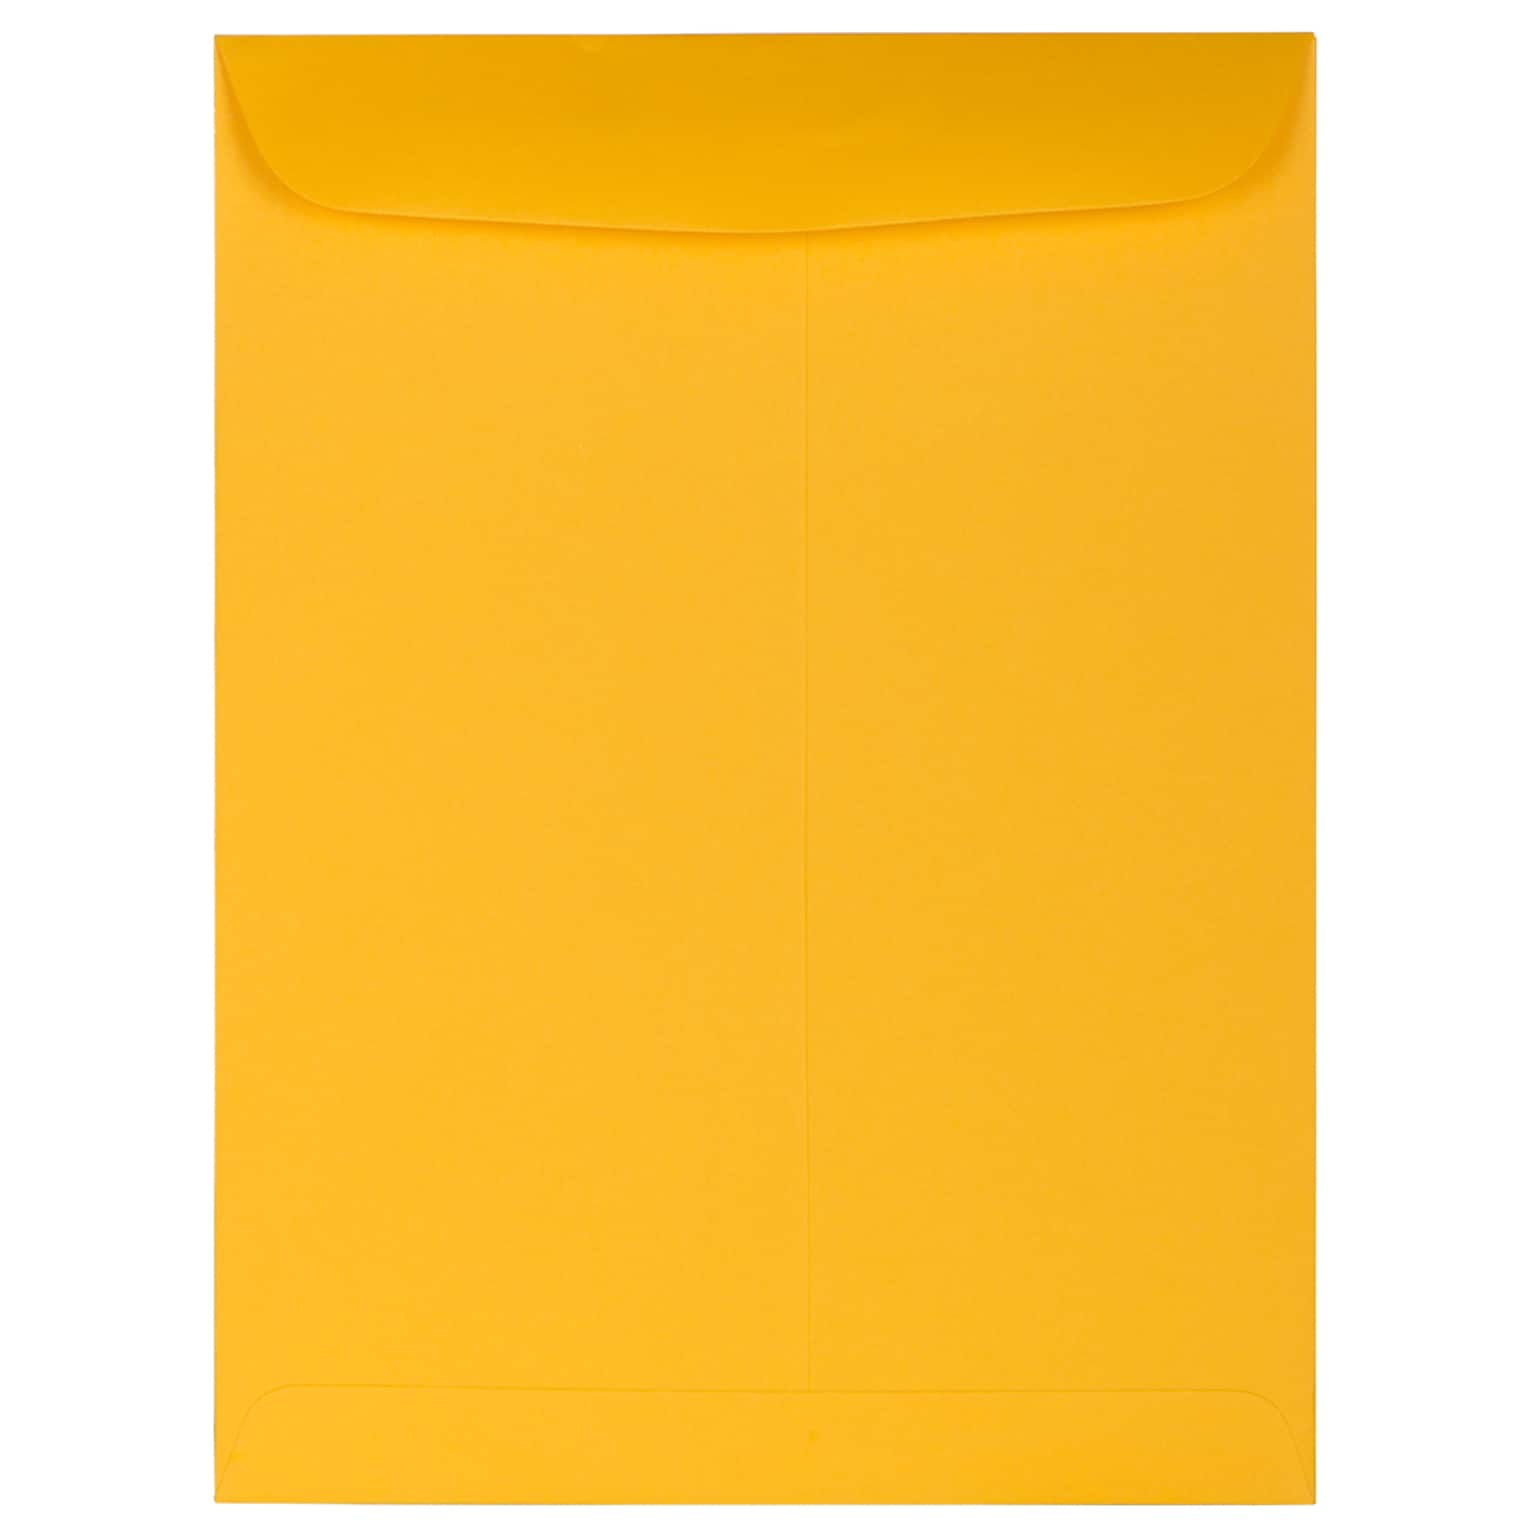 JAM Paper Open End Catalog Premium Envelopes, 9 x 12, Sunflower Yellow, 25/Pack (212816063)